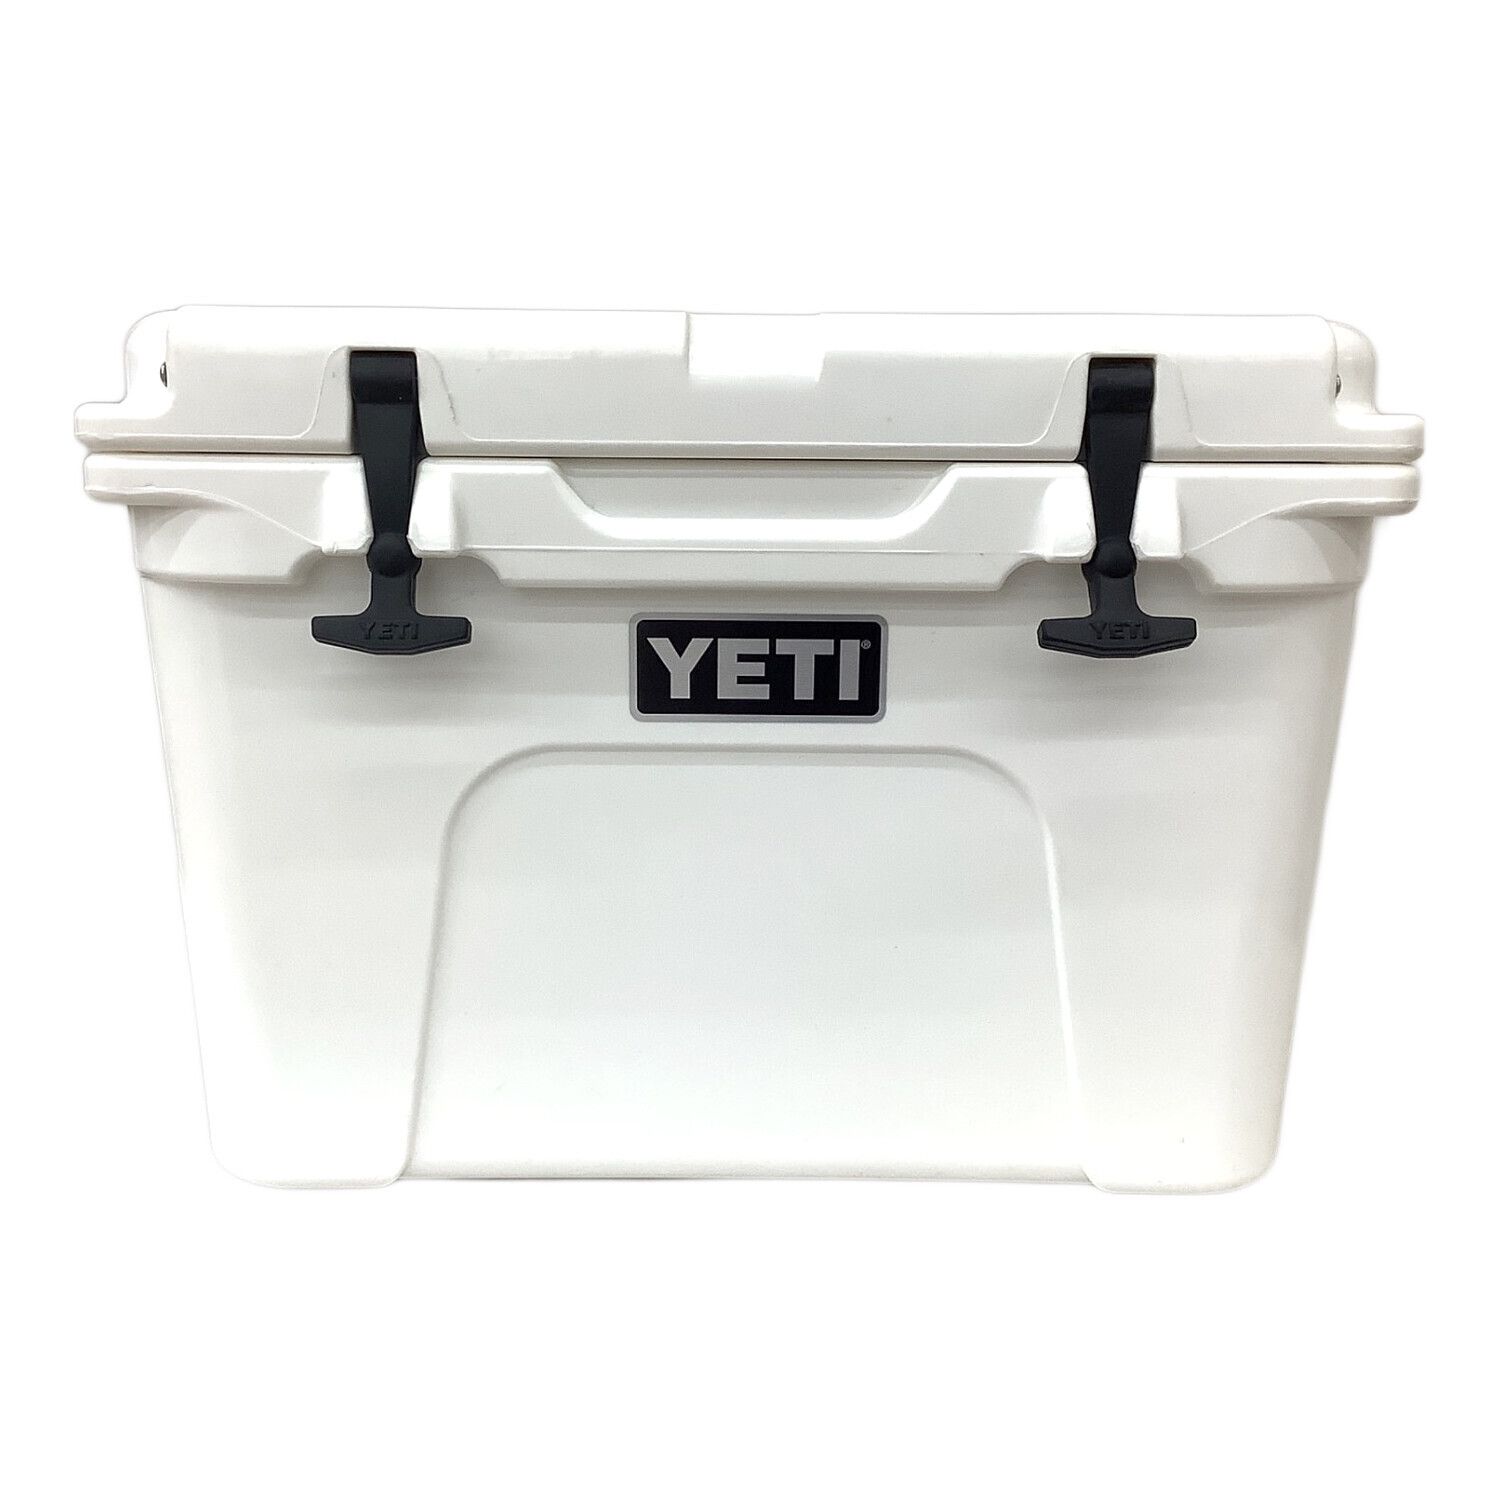 Yeti (イエティ) クーラーボックス 35QT ホワイト バケット・ドリンク 